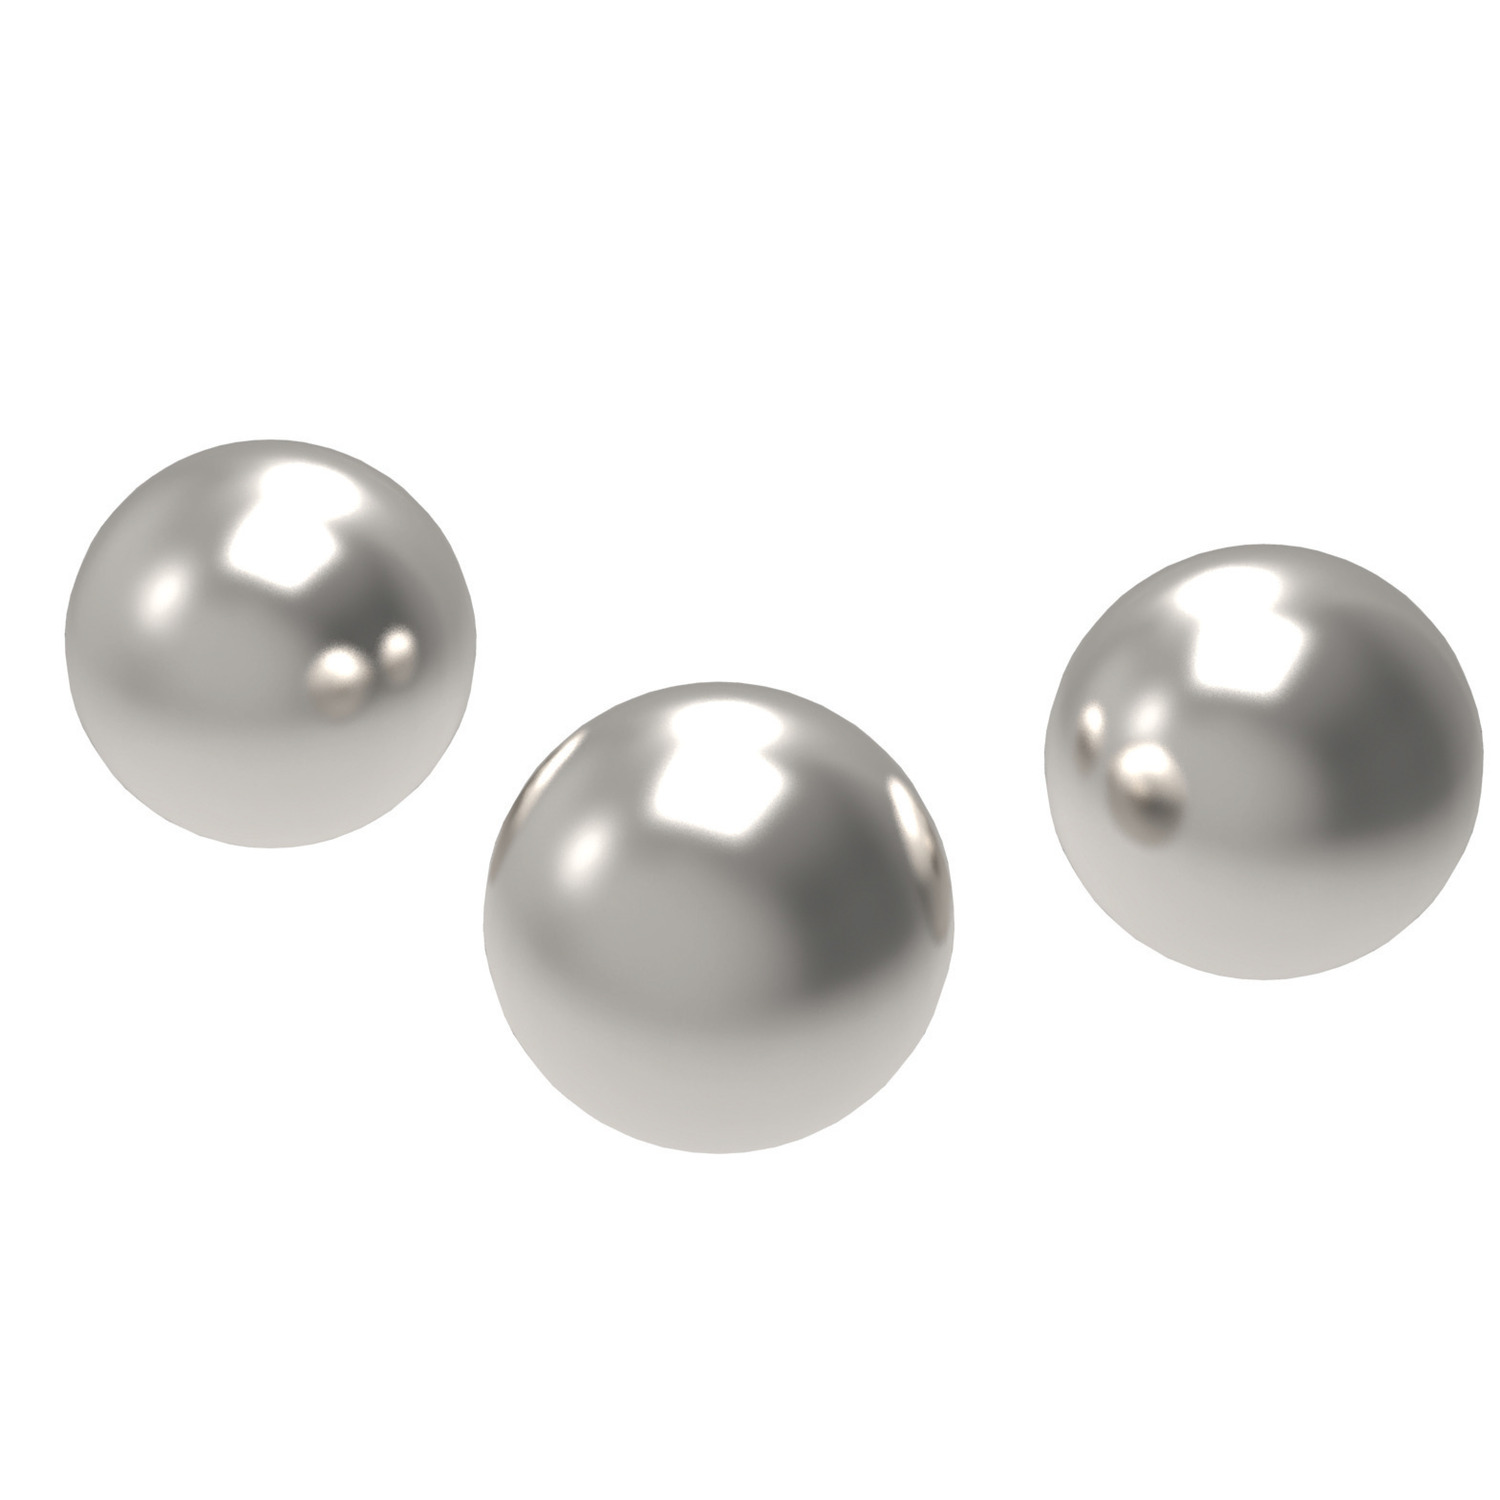 P1350 - Ball Bearings